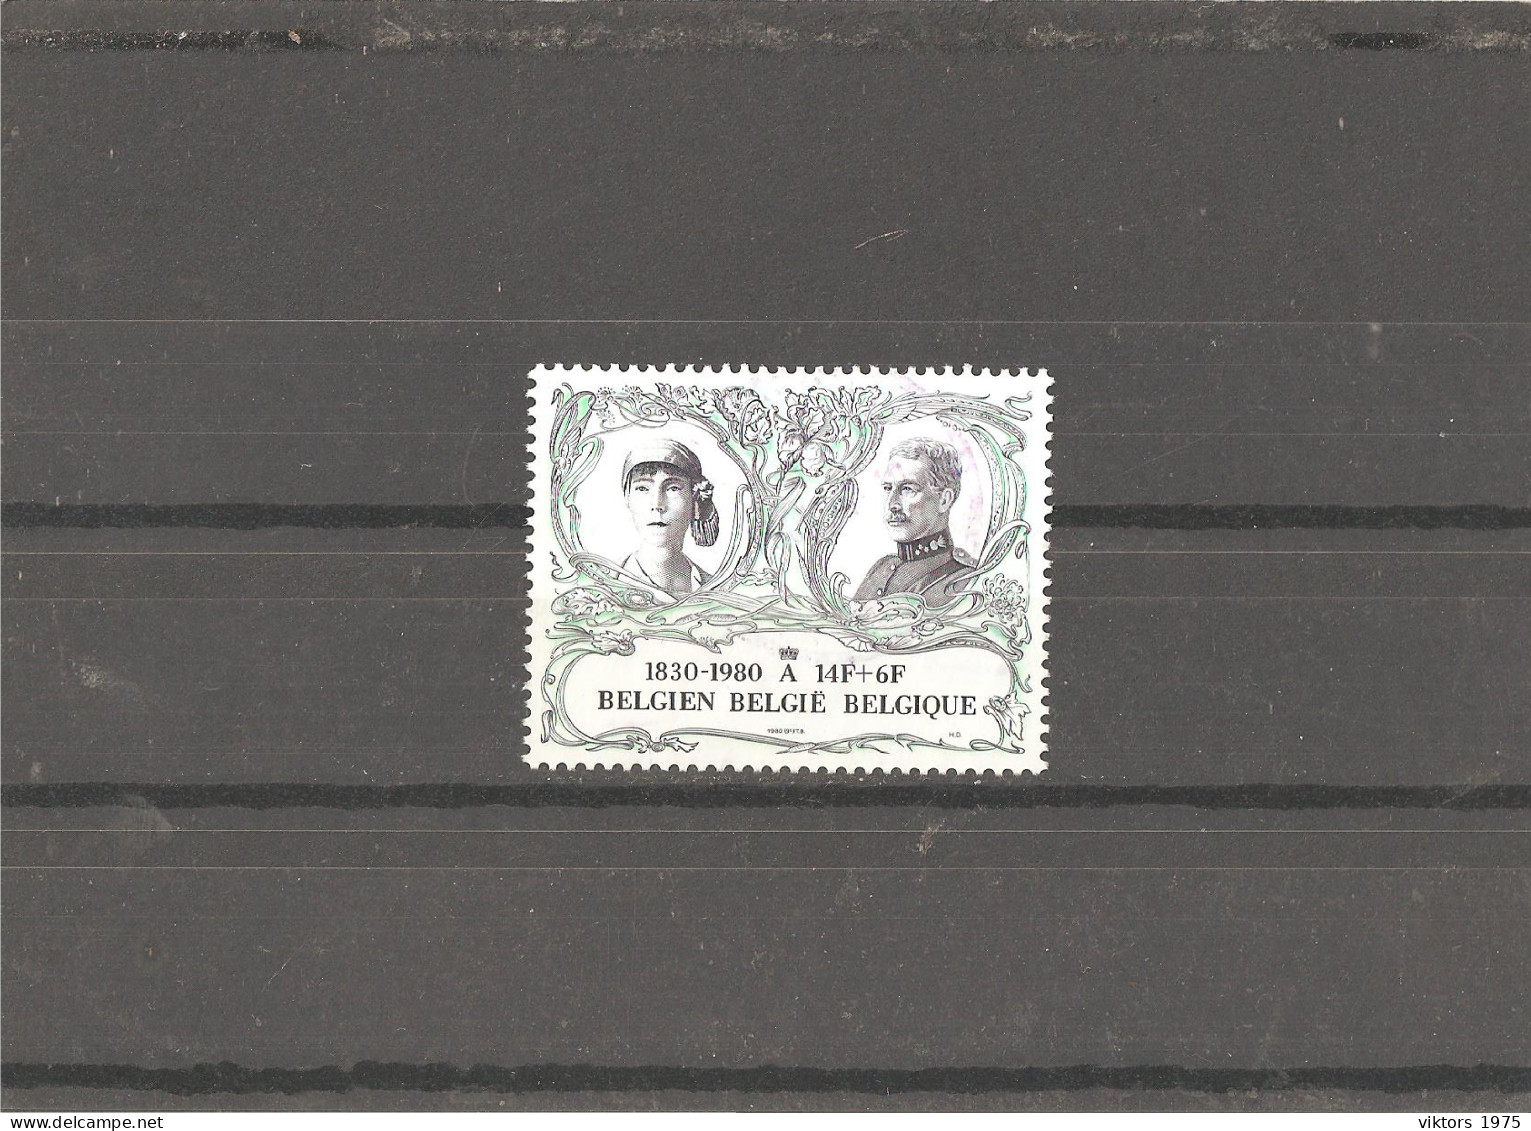 Used Stamp Nr.2031 In MICHEL Catalog - Usati